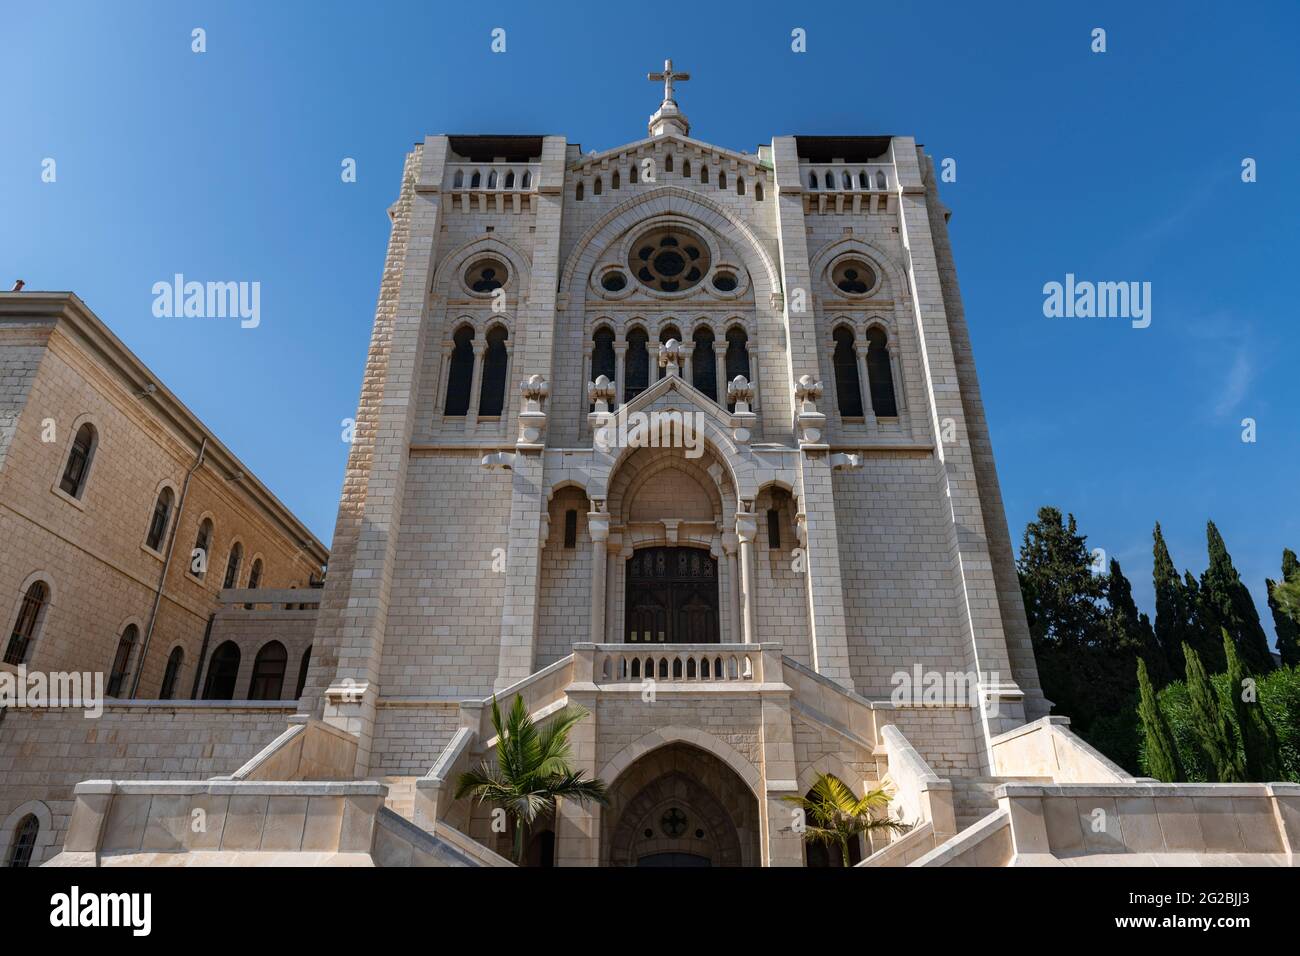 La Chiesa Selesiana di Gesù Adolescente è uno dei più notevoli segni distintivi del Nazareth. Israele Foto Stock